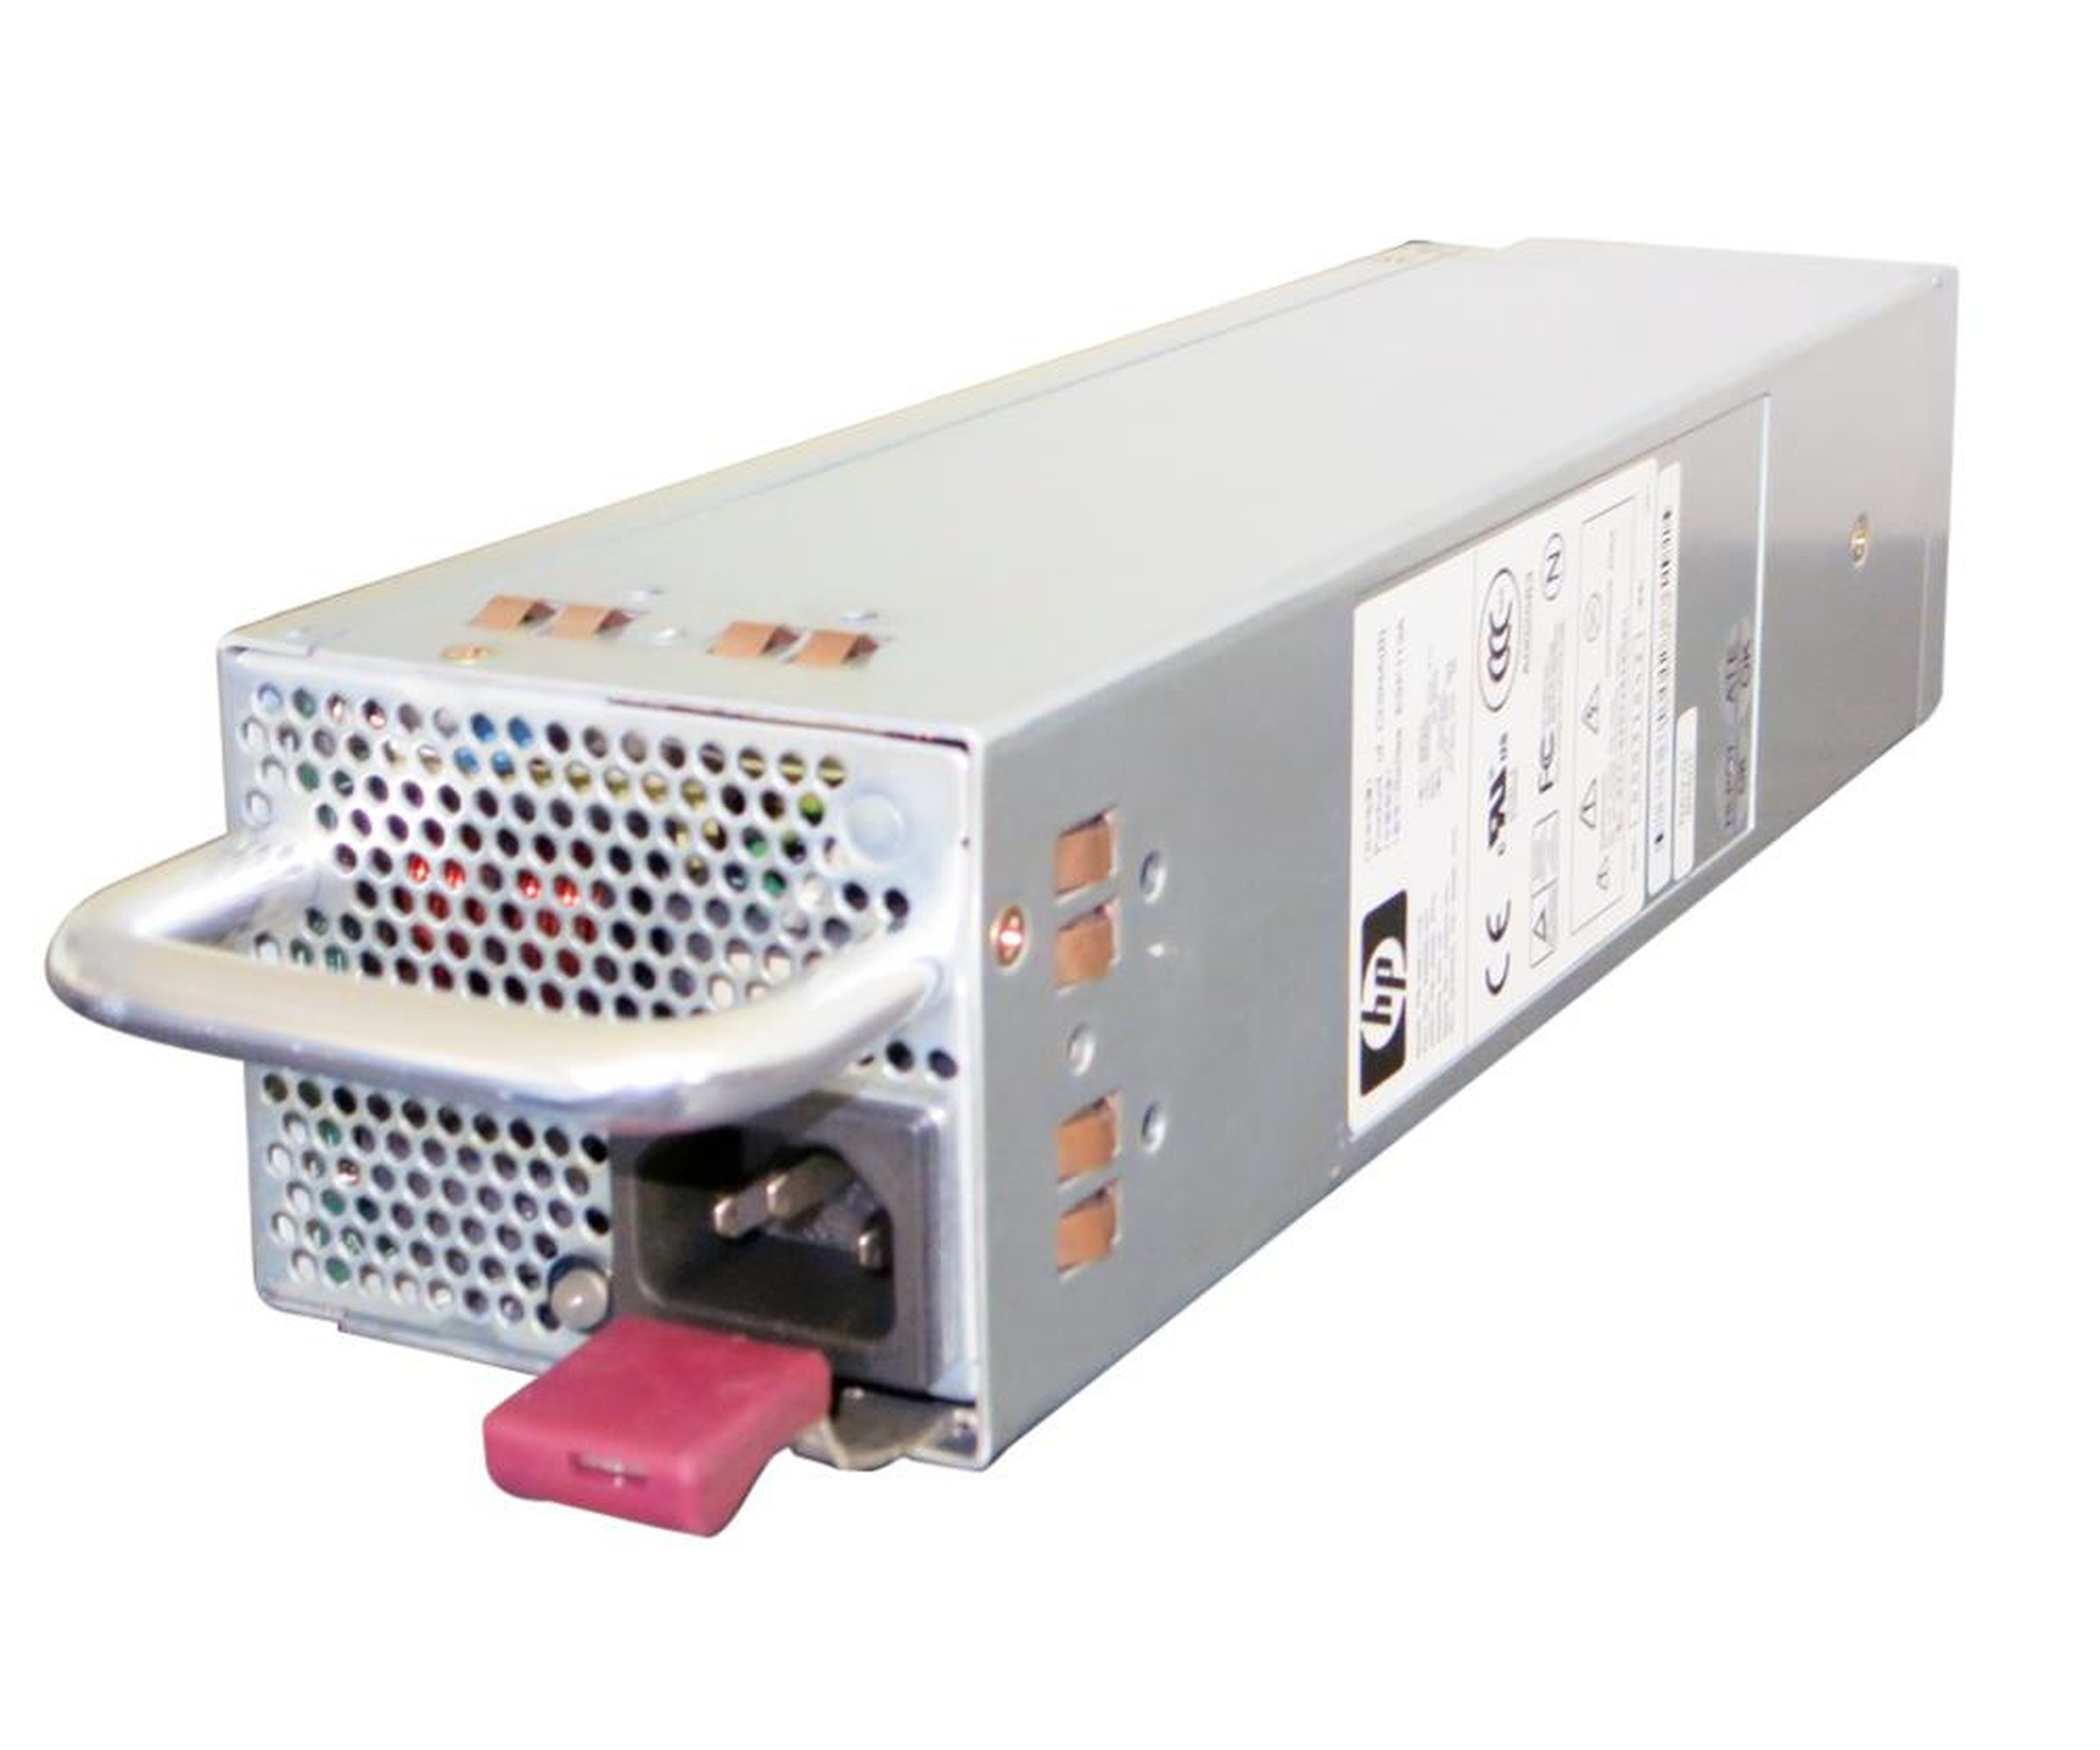 HP PS-3381-1C2 - Netzteil Power Supply - 400 Watt - 339596-001 - für StorageWorks MSA20